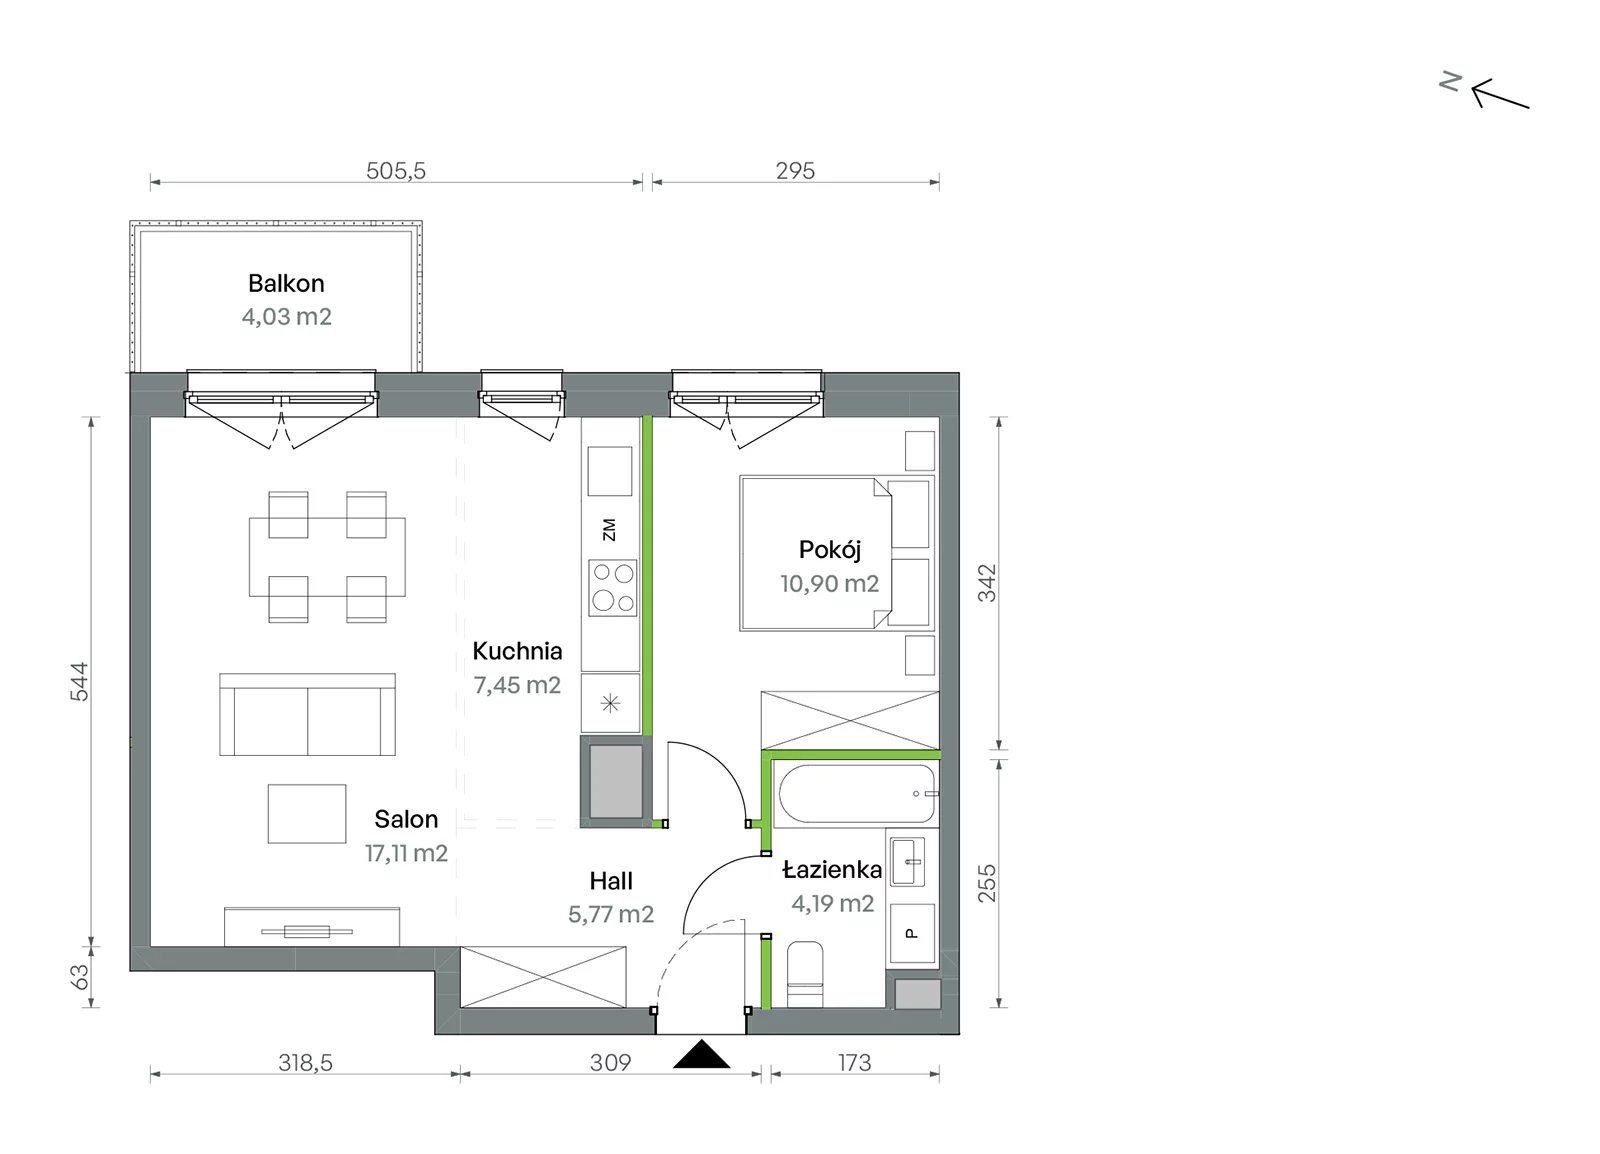 Mieszkanie 45,42 m², piętro 7, oferta nr 1/A/2/91, Oliwska Vita etap II, Warszawa, Targówek, Bródno, ul. Oliwska 11